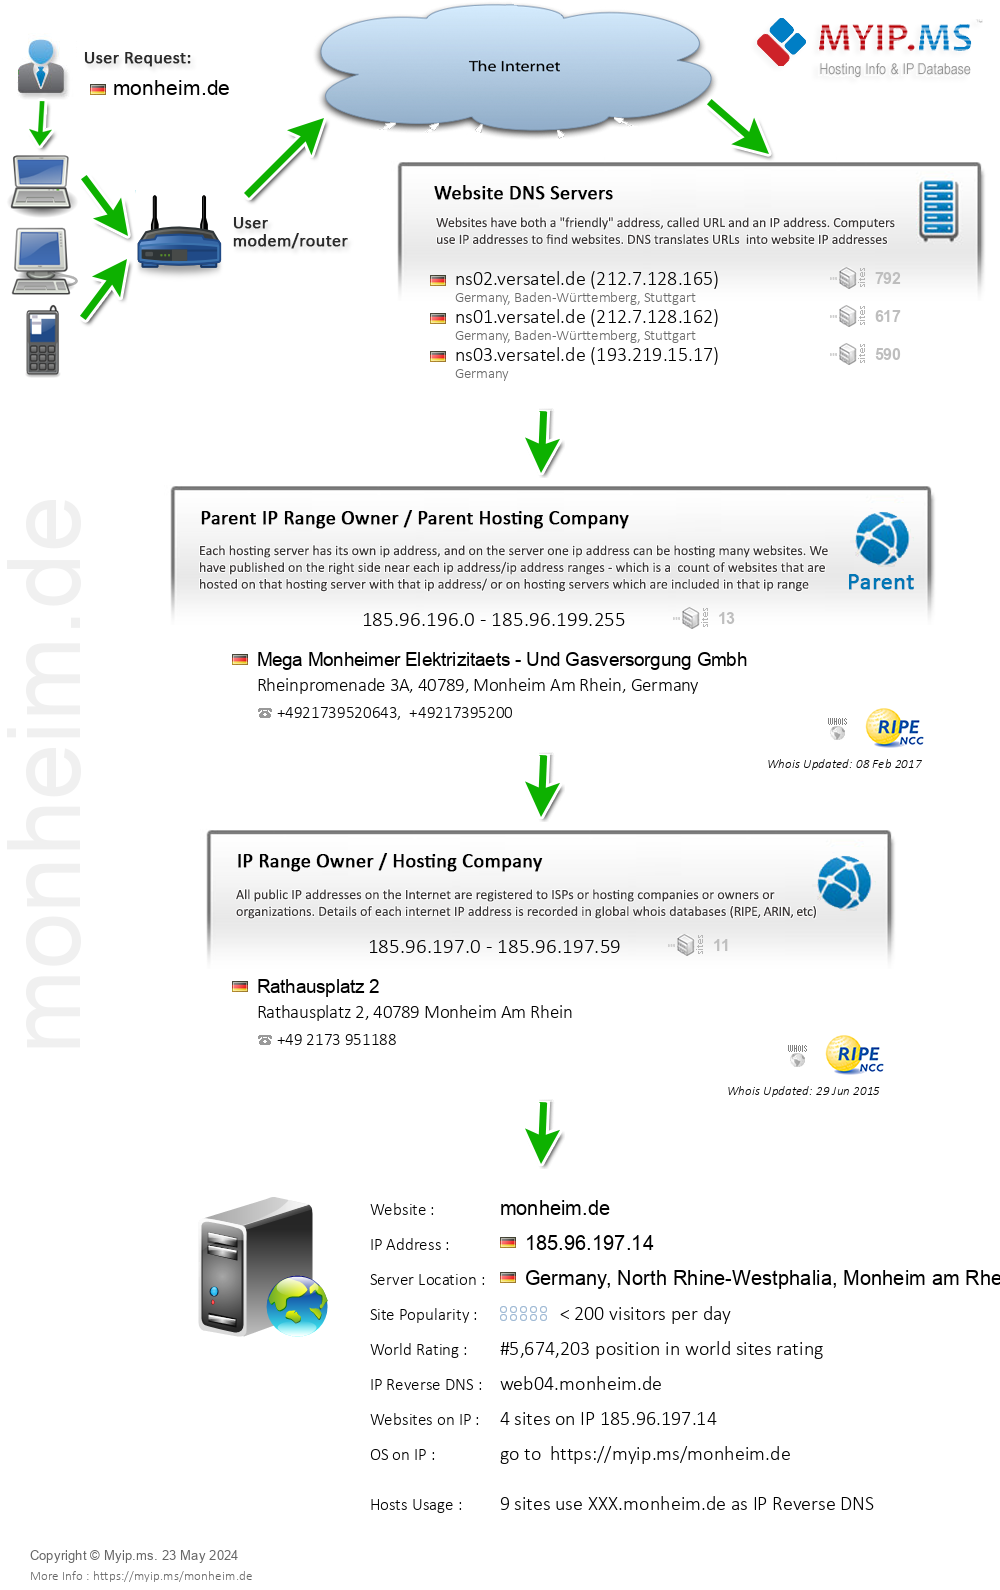 Monheim.de - Website Hosting Visual IP Diagram